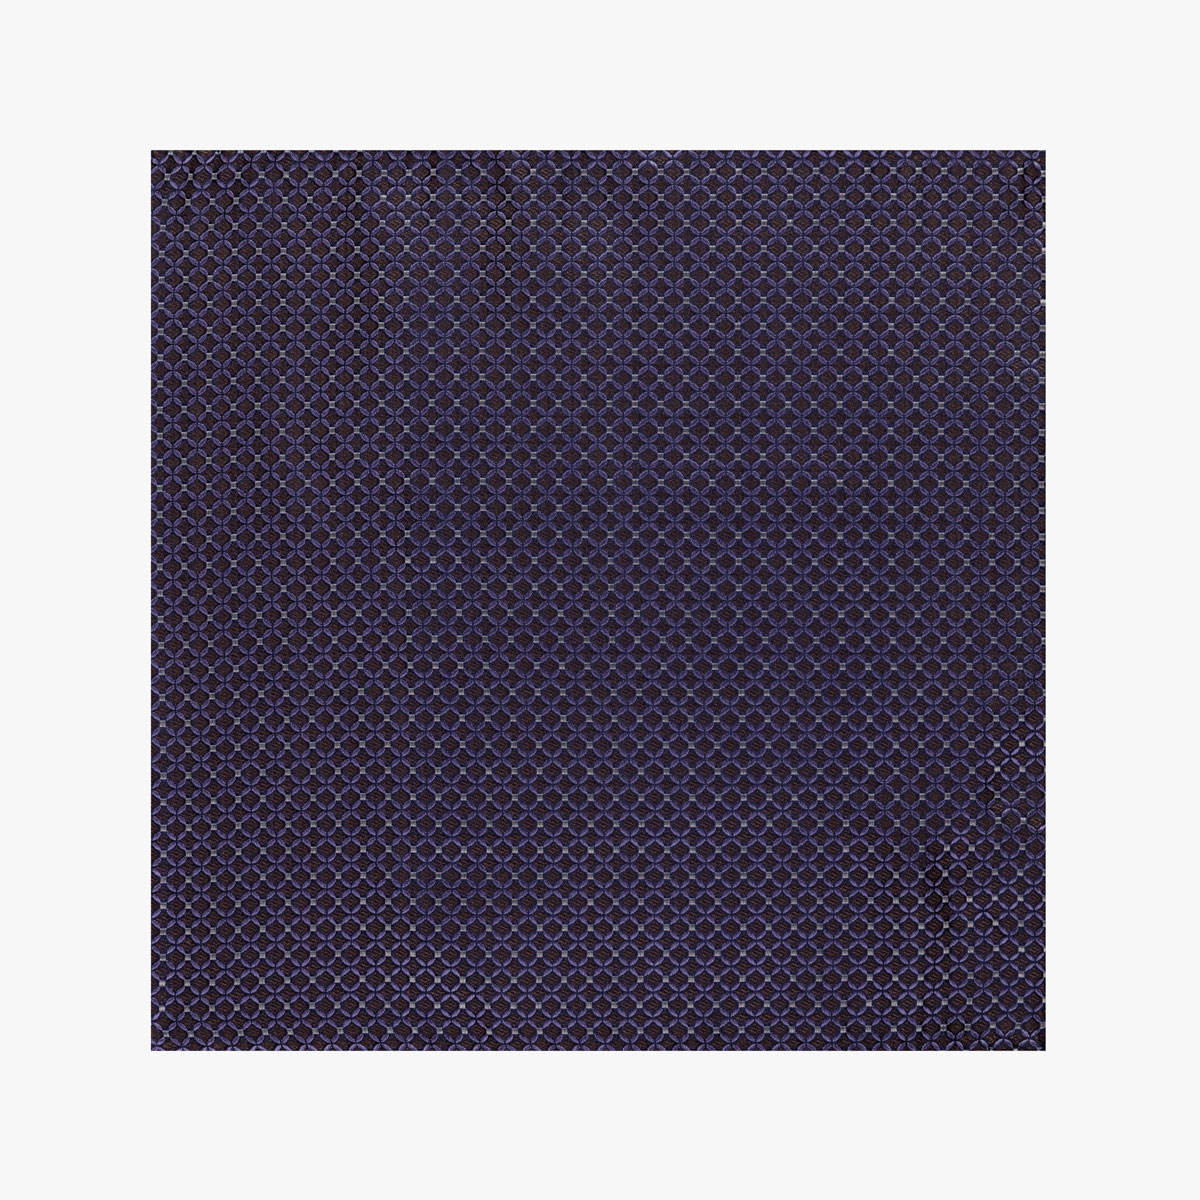 Einstecktuch mit geometrischem Muster in braun lila